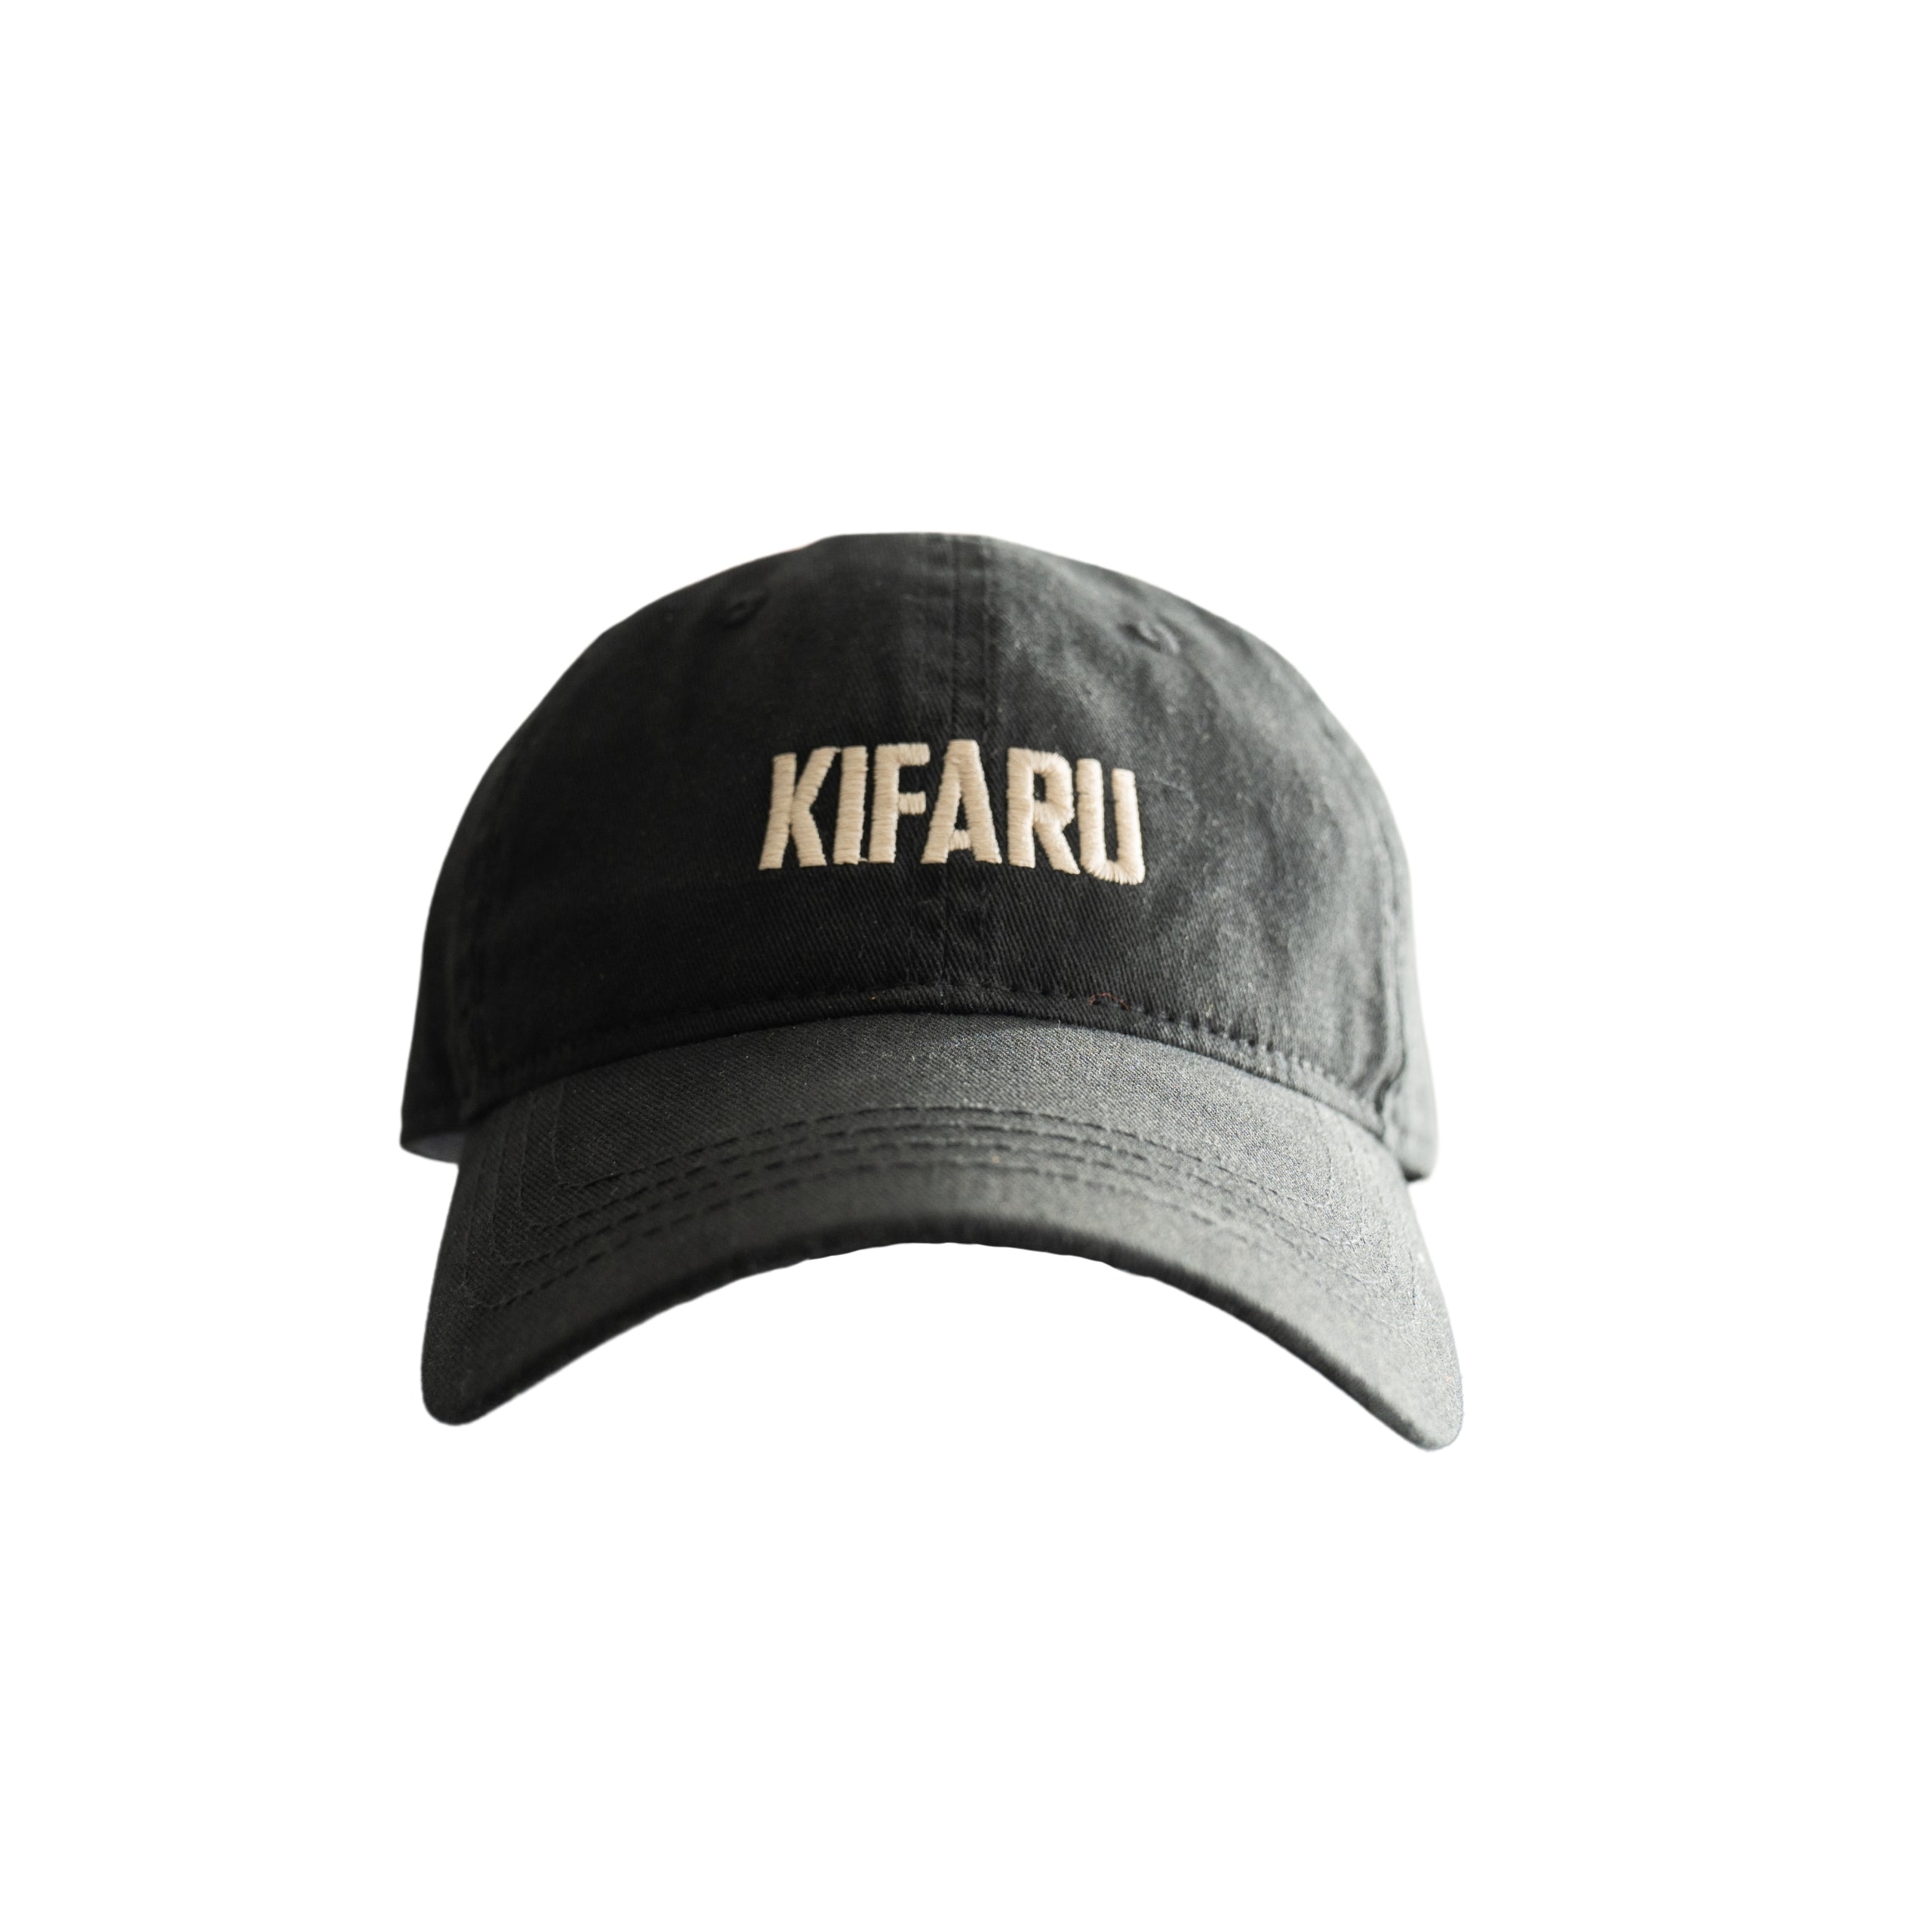 Kifaru Unstructured Hat Black